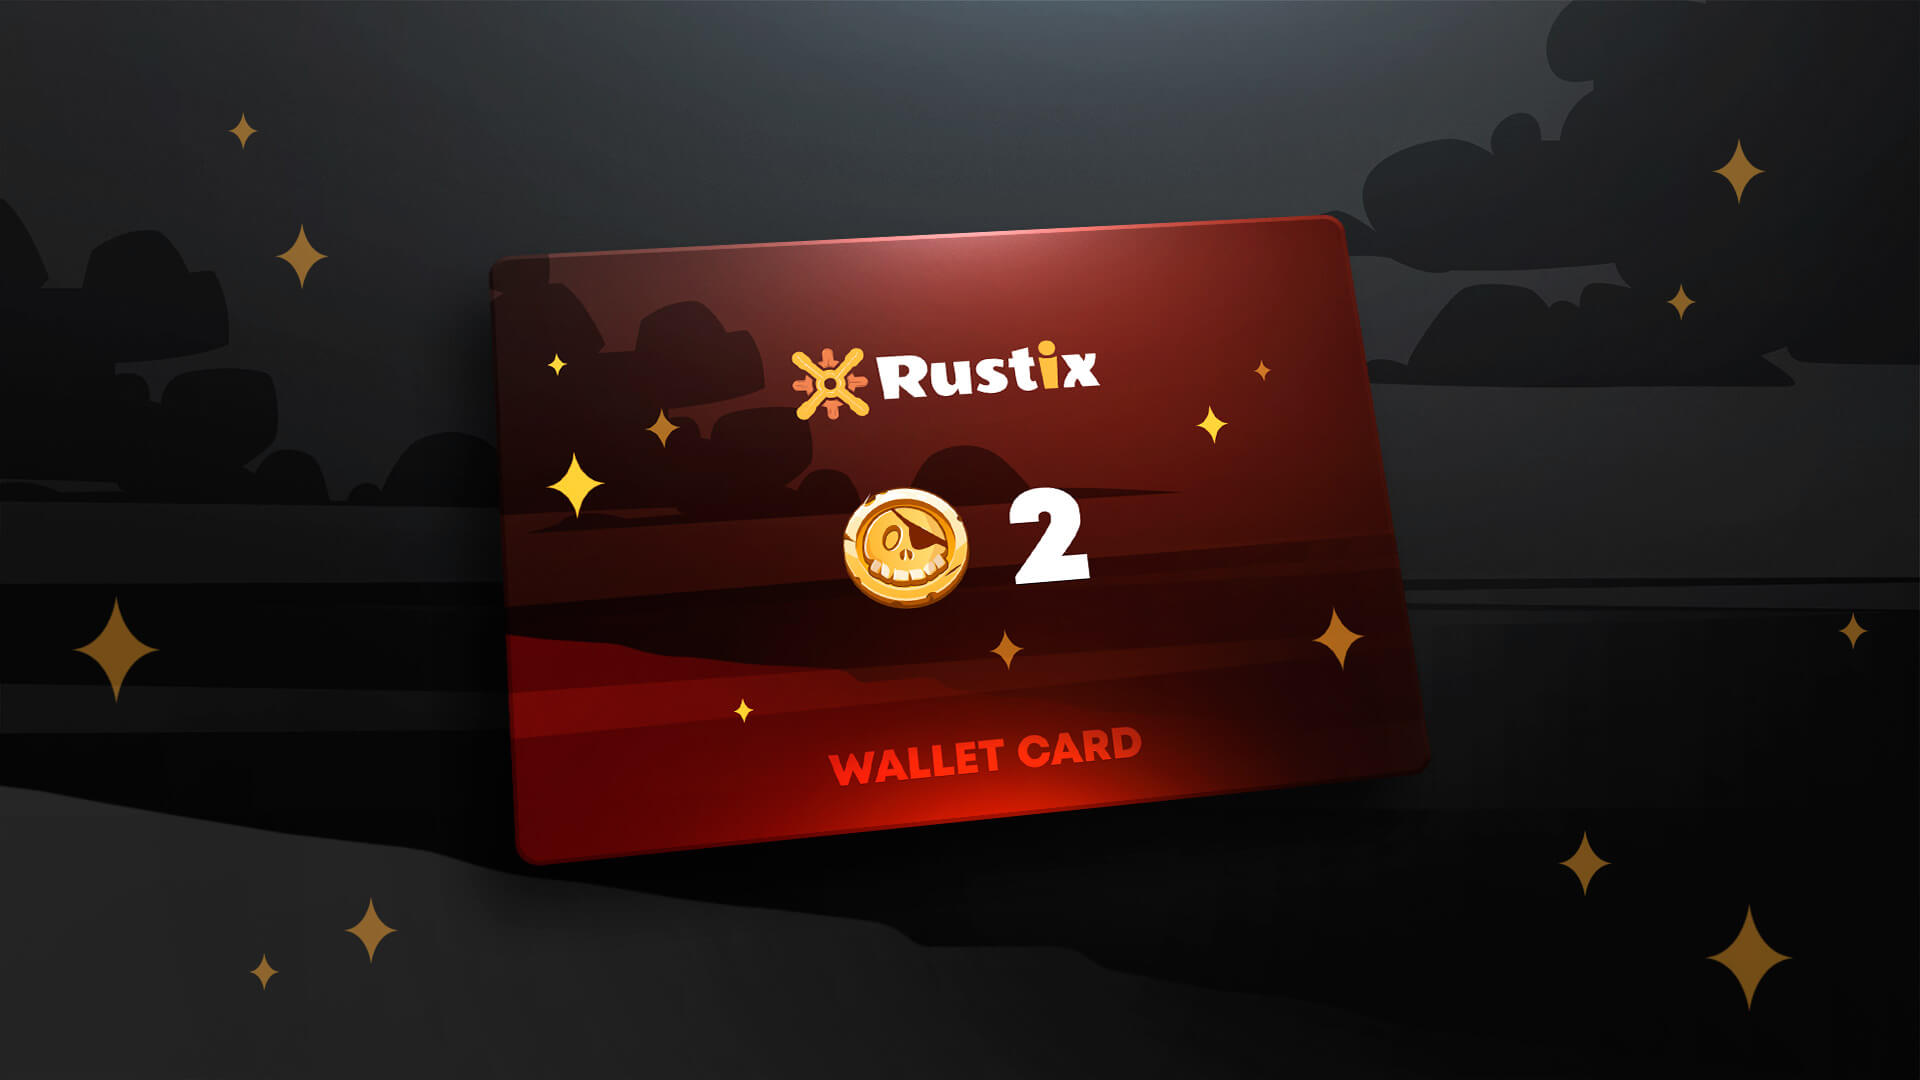 Rustix.io 2 USD Wallet Card Code 2.26 usd